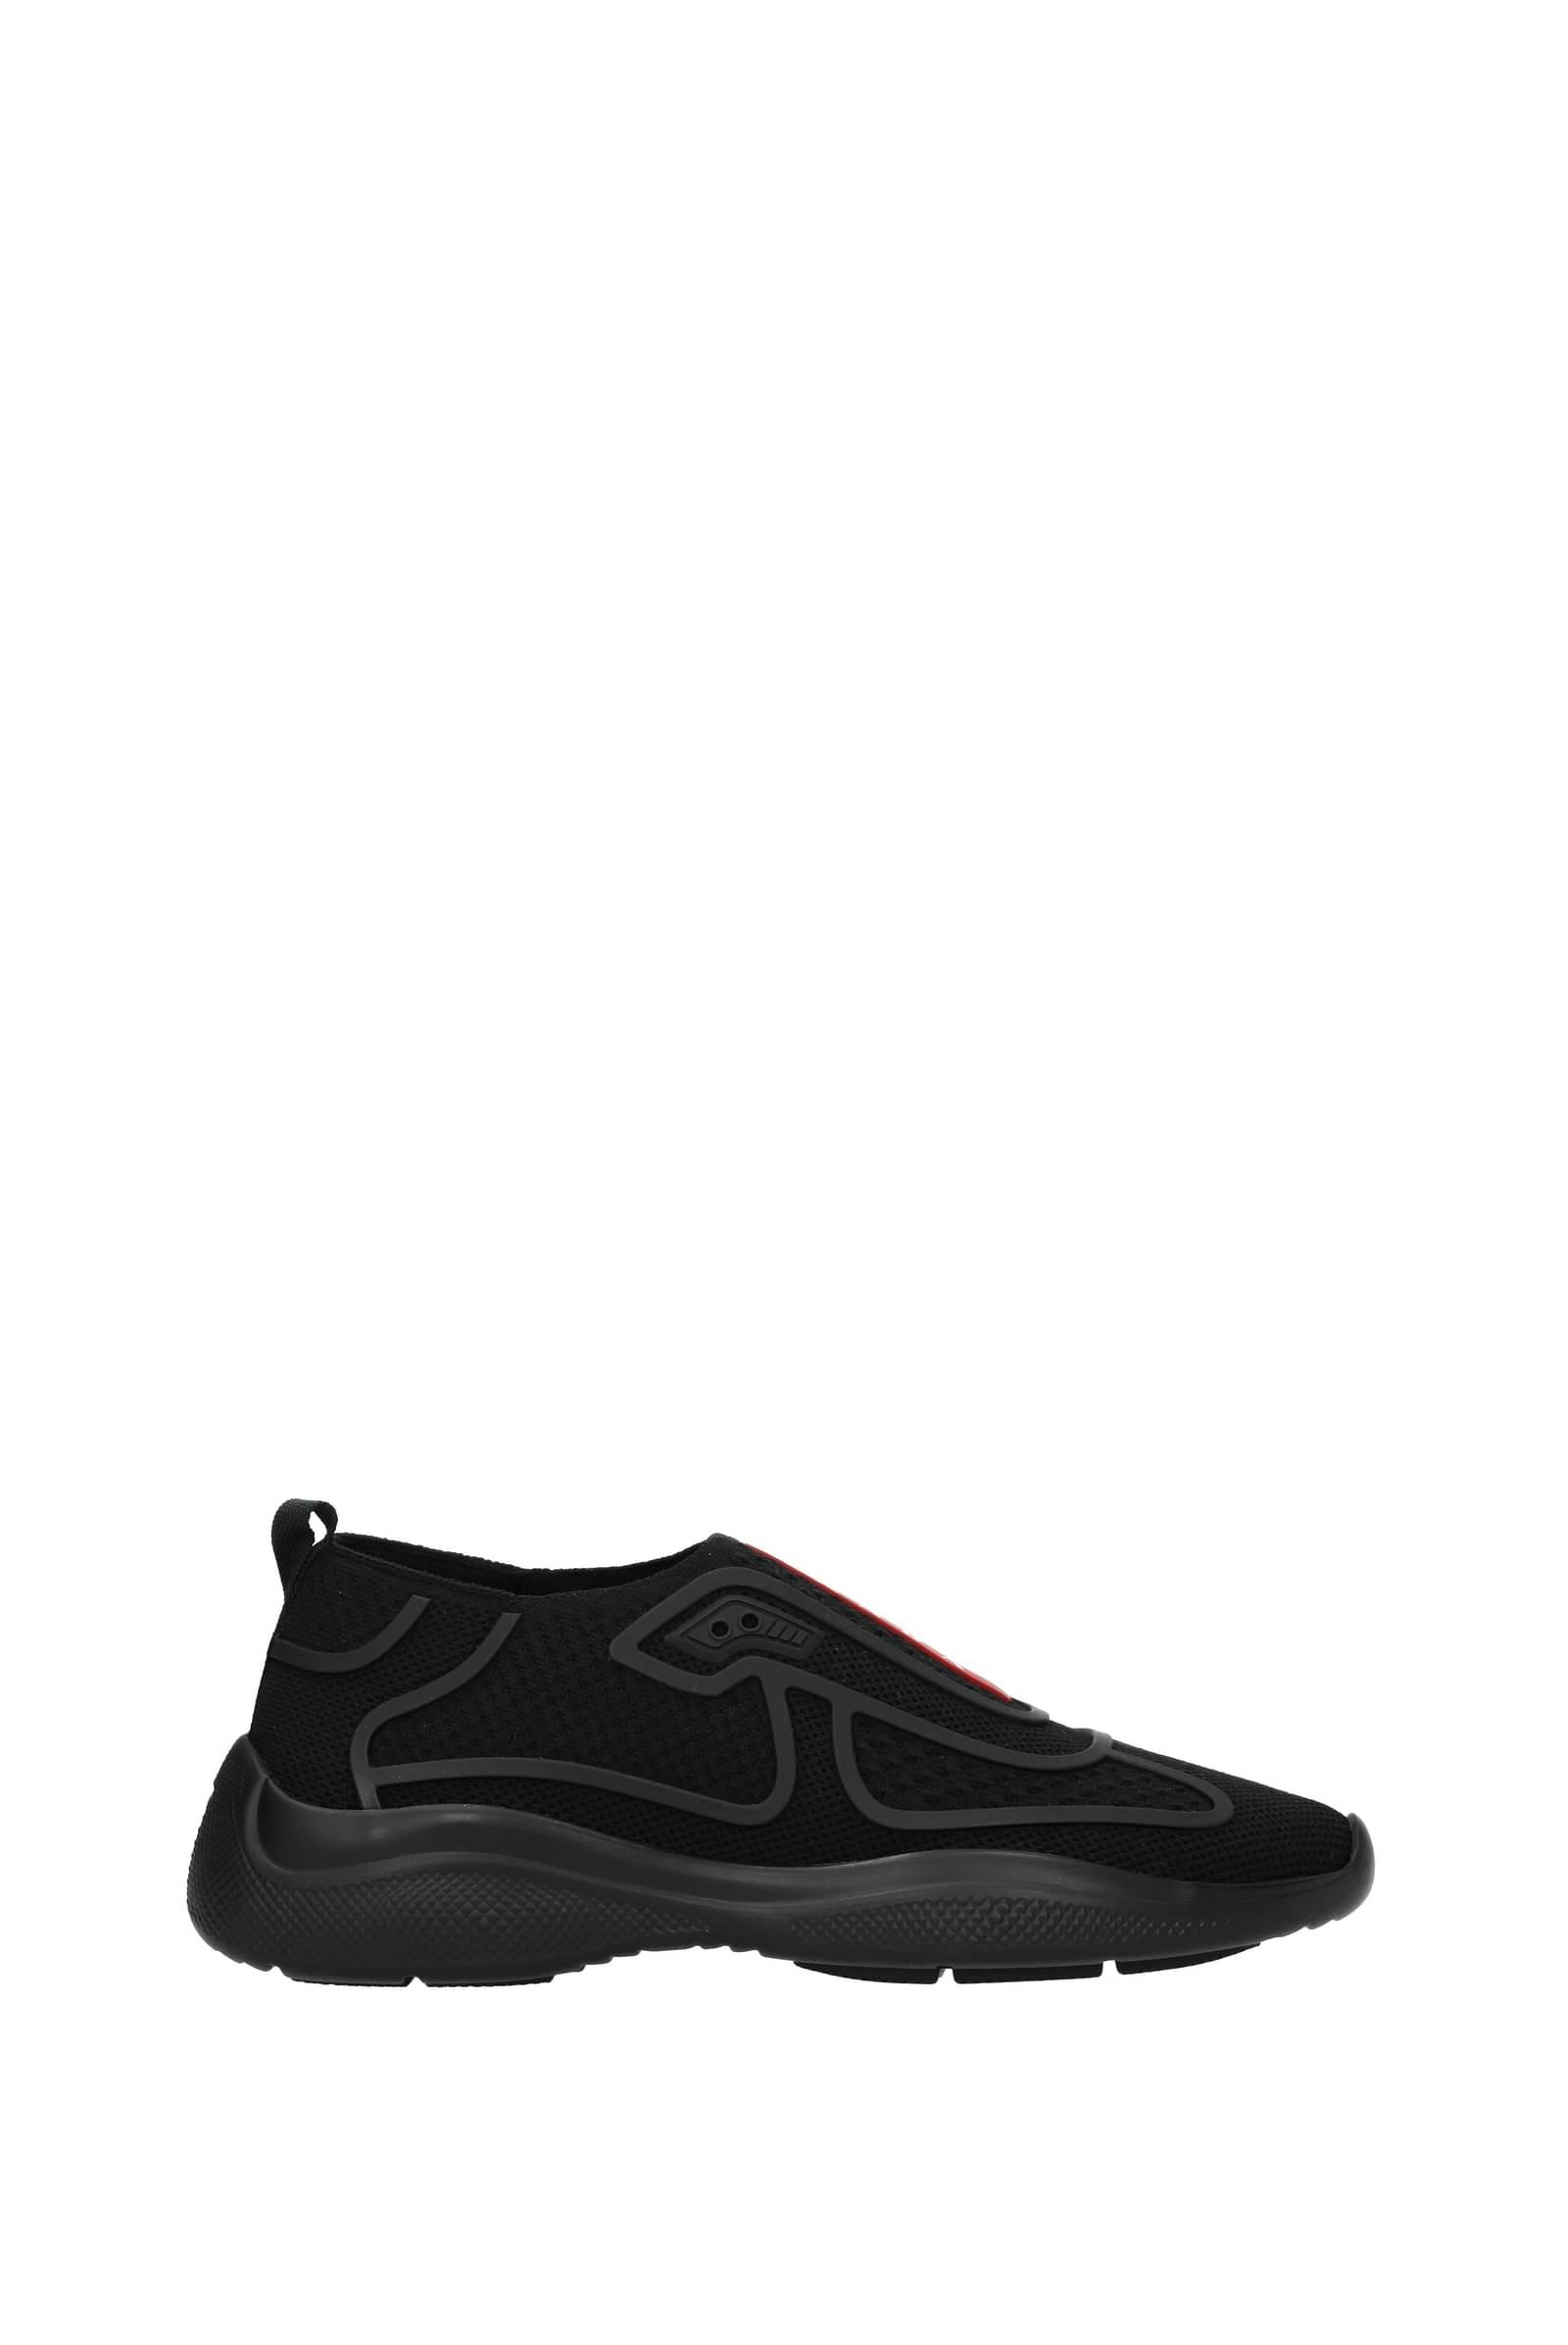 Prada Sneakers Fabric Black | Lyst